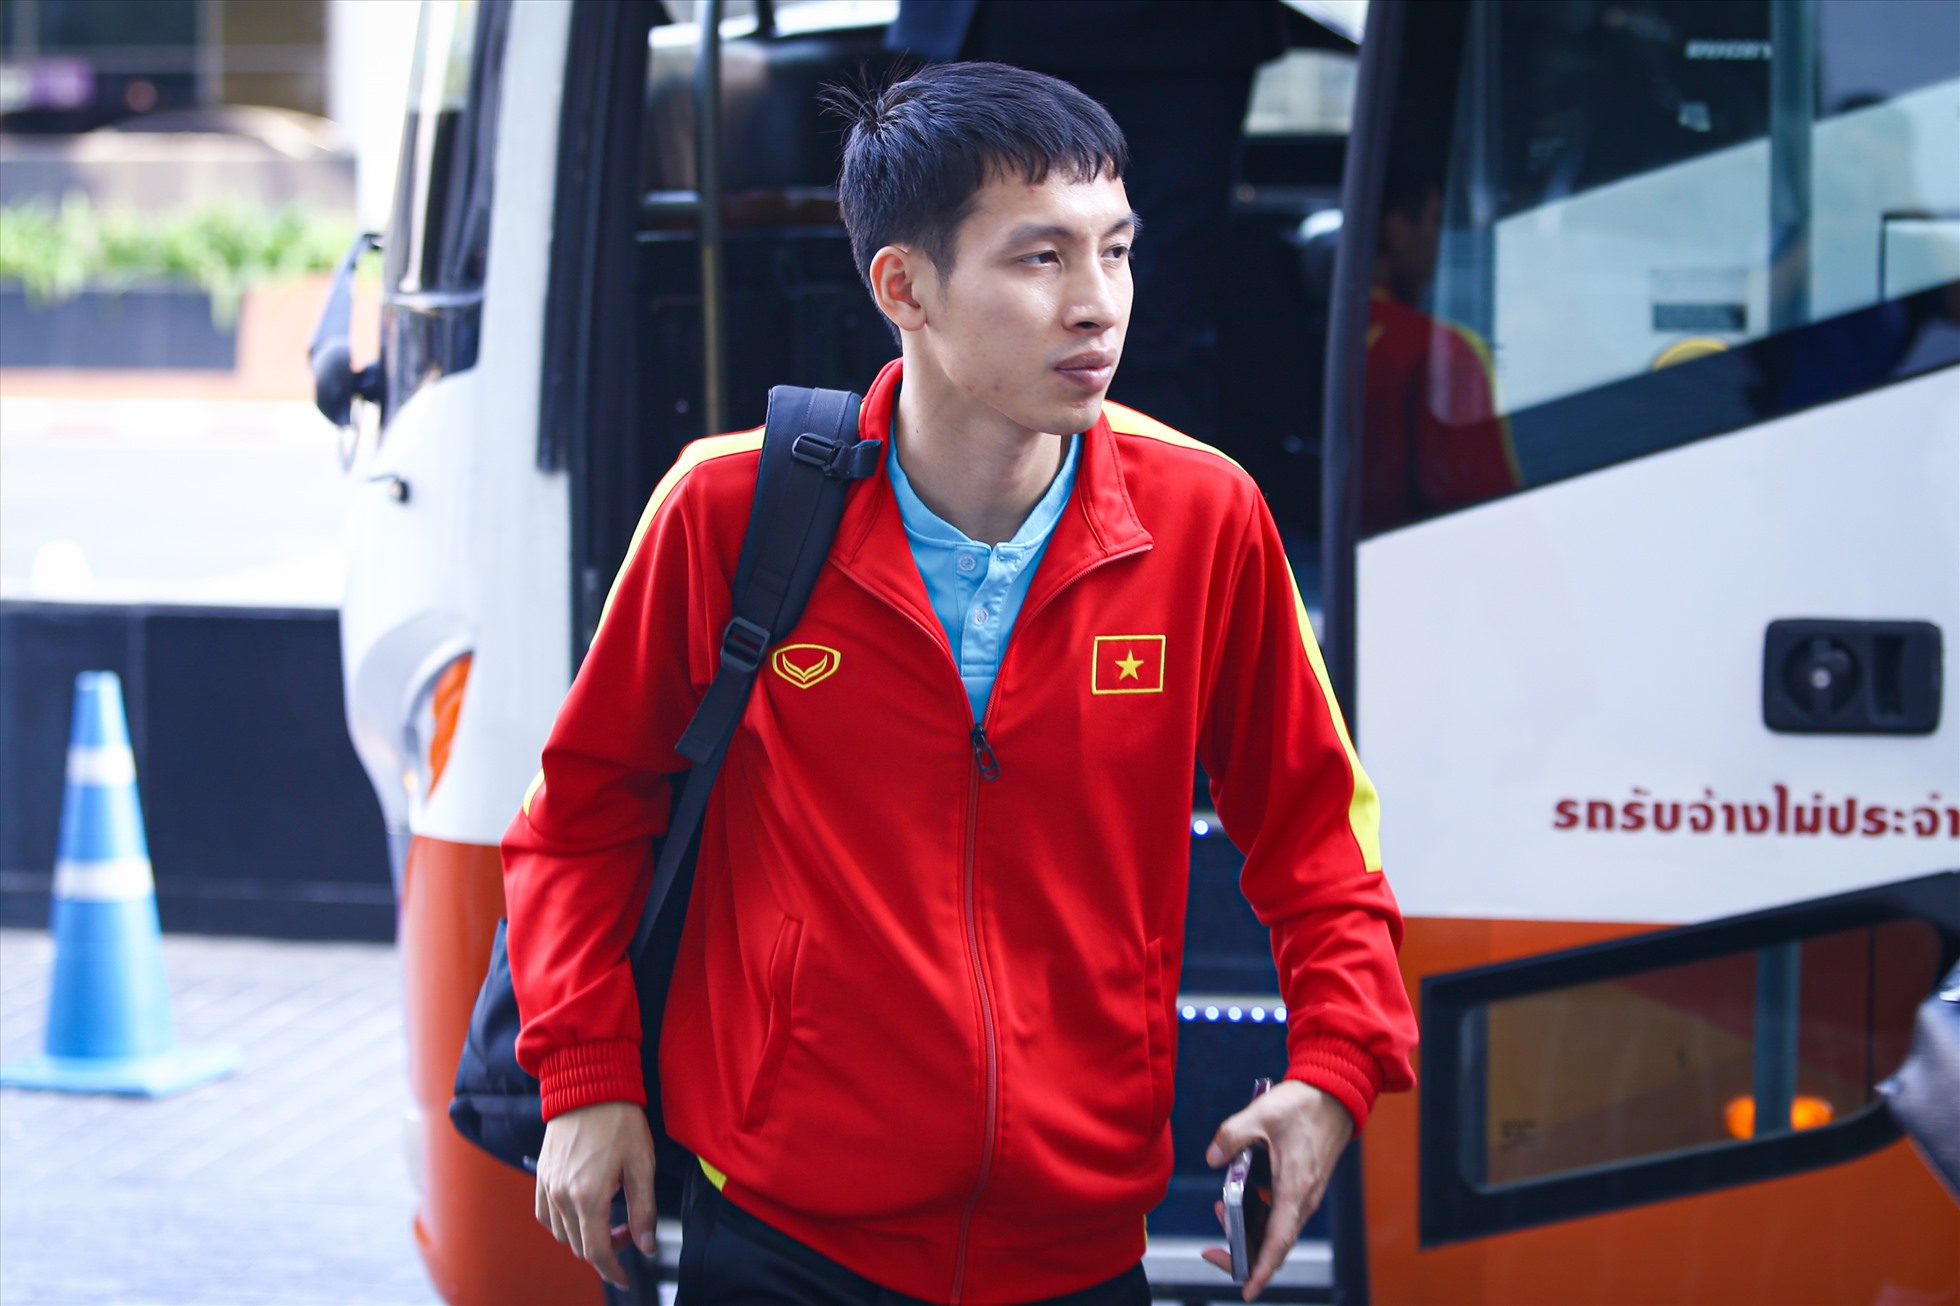 Hùng Dũng và Hoàng Đức vẫn là 2 nhân tố chủ lực của đội tuyển Việt Nam ở giải đấu năm nay. Trong đó, Hùng Dũng đang là cầu thủ kiến tạo nhiều nhất của đội.